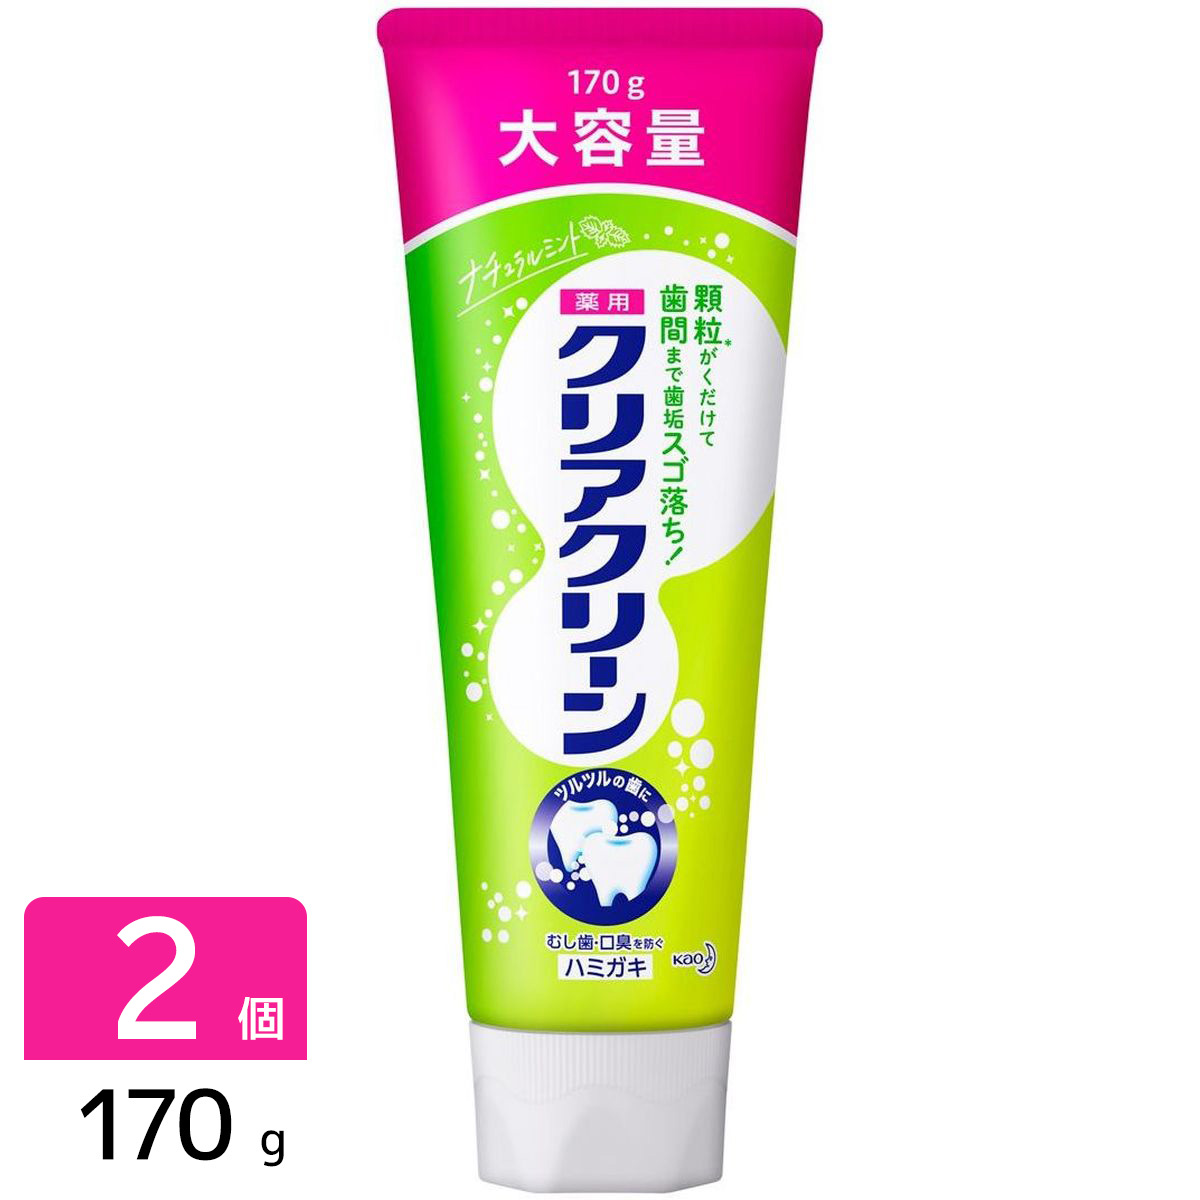 Kao クリアクリーン ナチュラルミント 170g×2本 クリアクリーン 歯磨き粉の商品画像